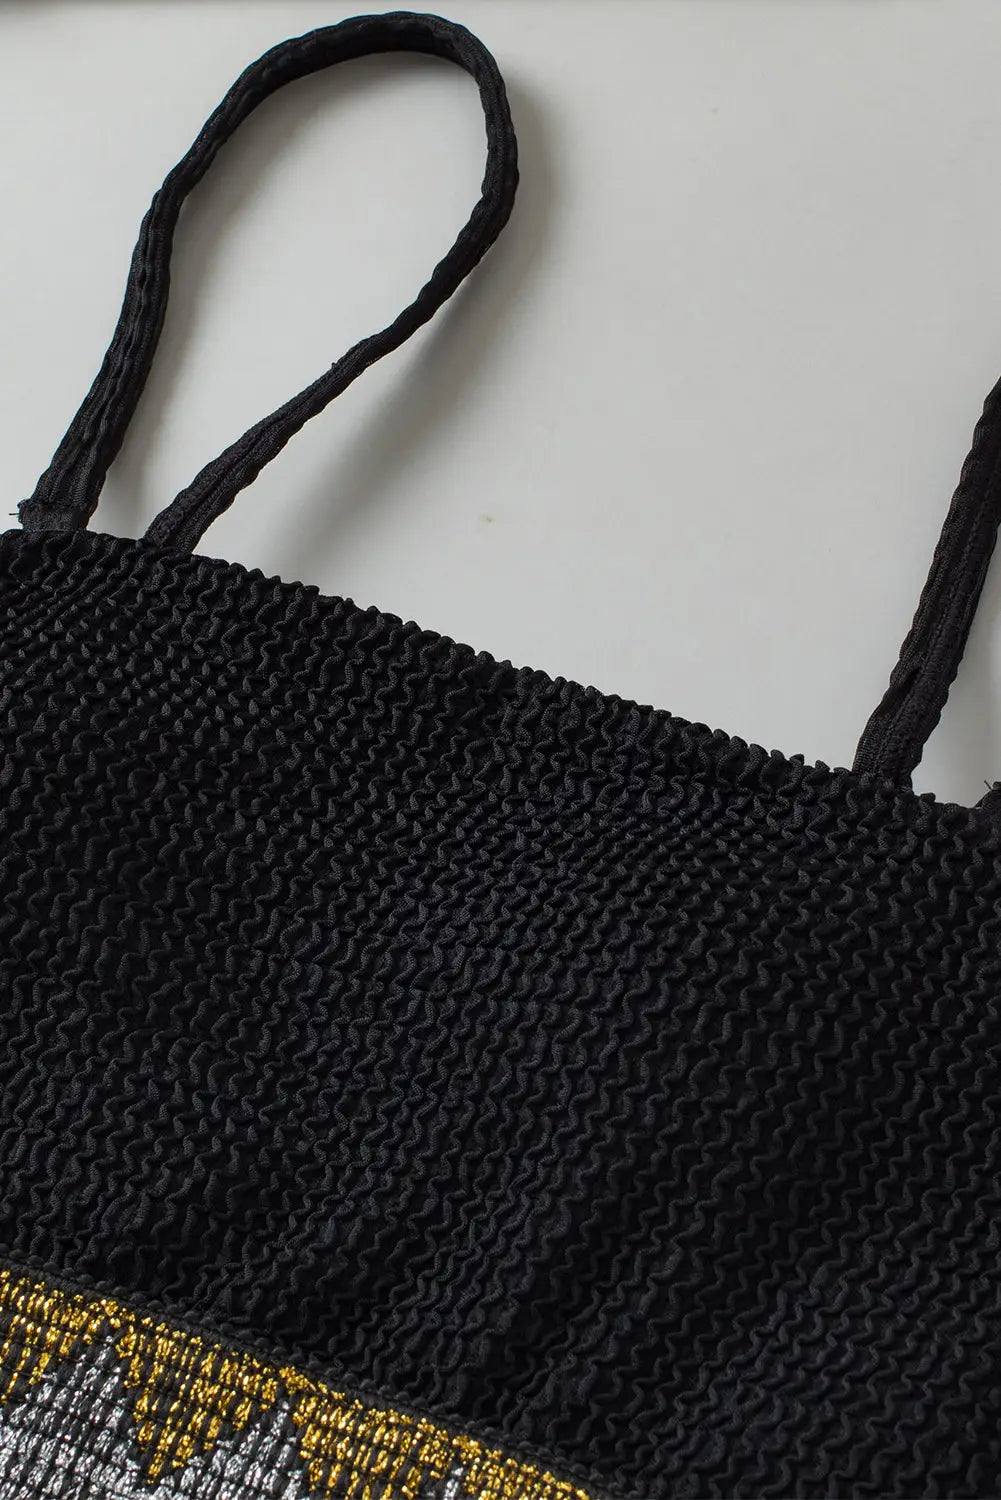 Black strapless one piece swimsuit - swimwear/one